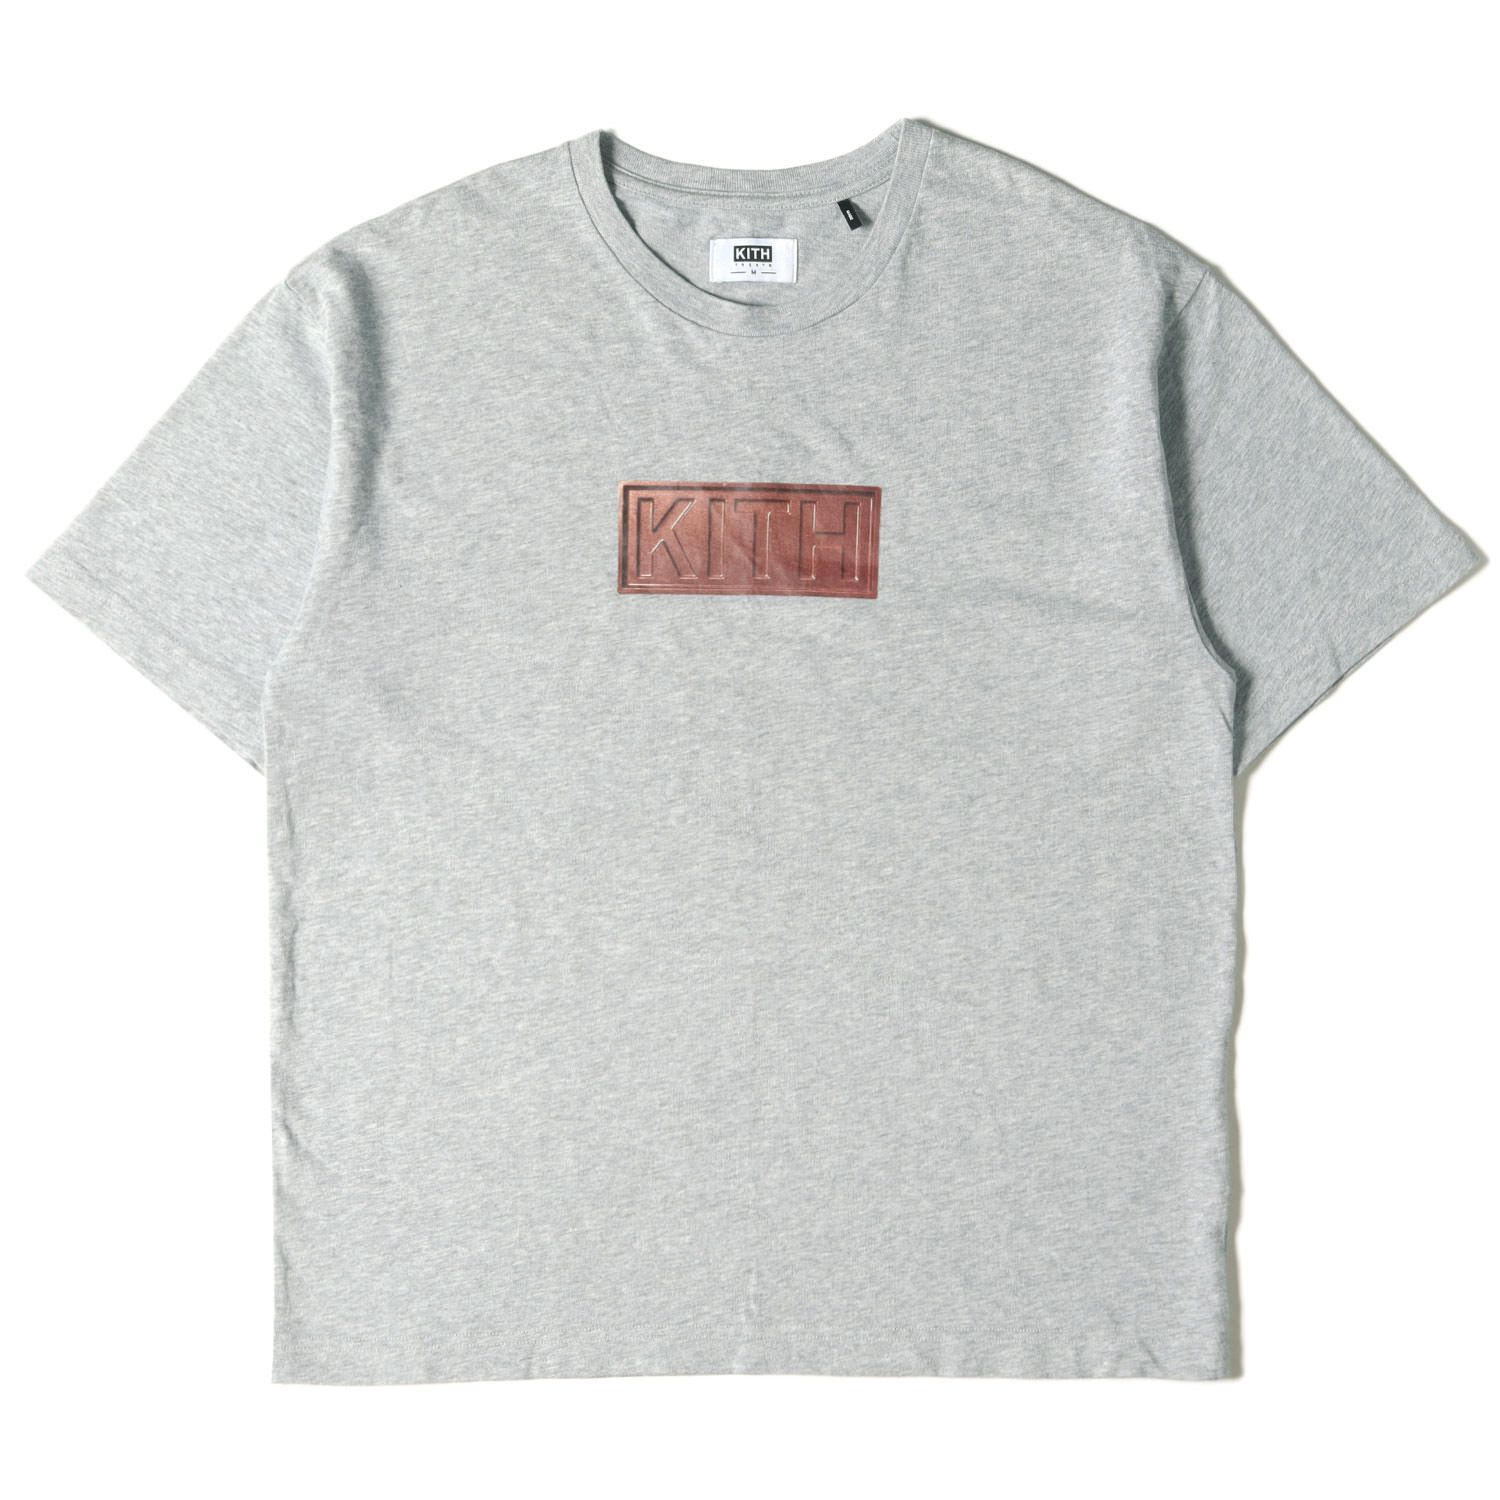 KITH NYC キス ニューヨークシティー Tシャツ サイズ:M KITH TREATS ...